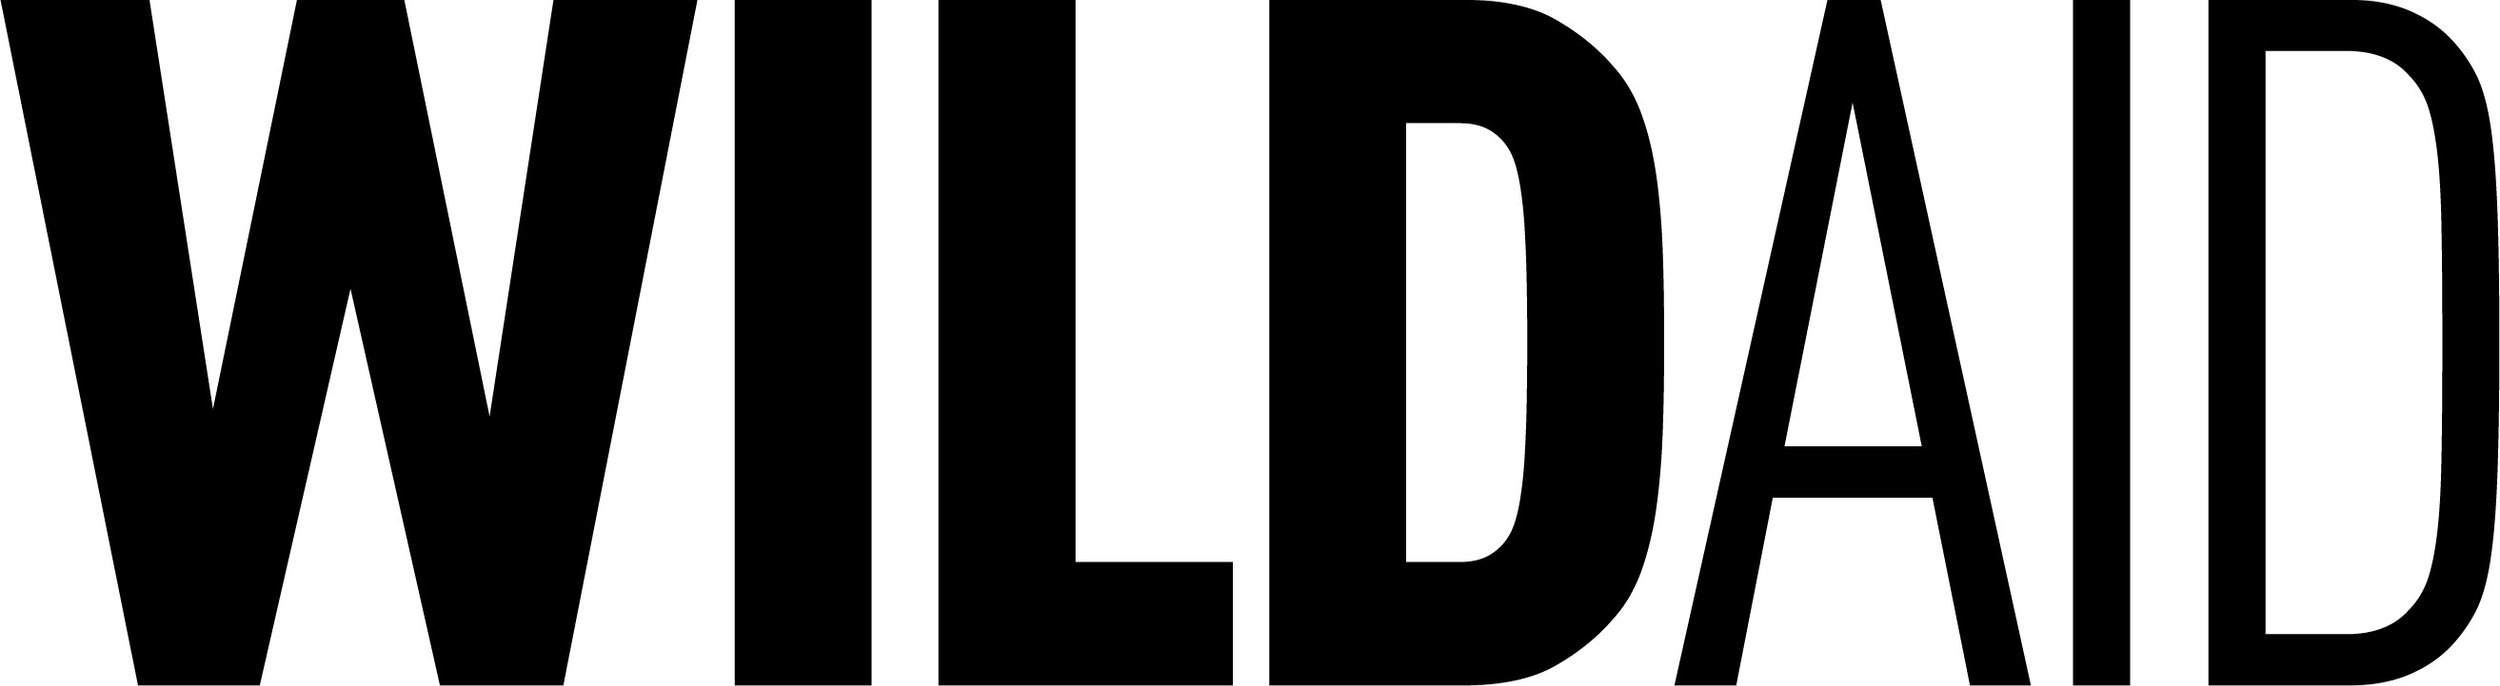 WildAid-Logo.jpg